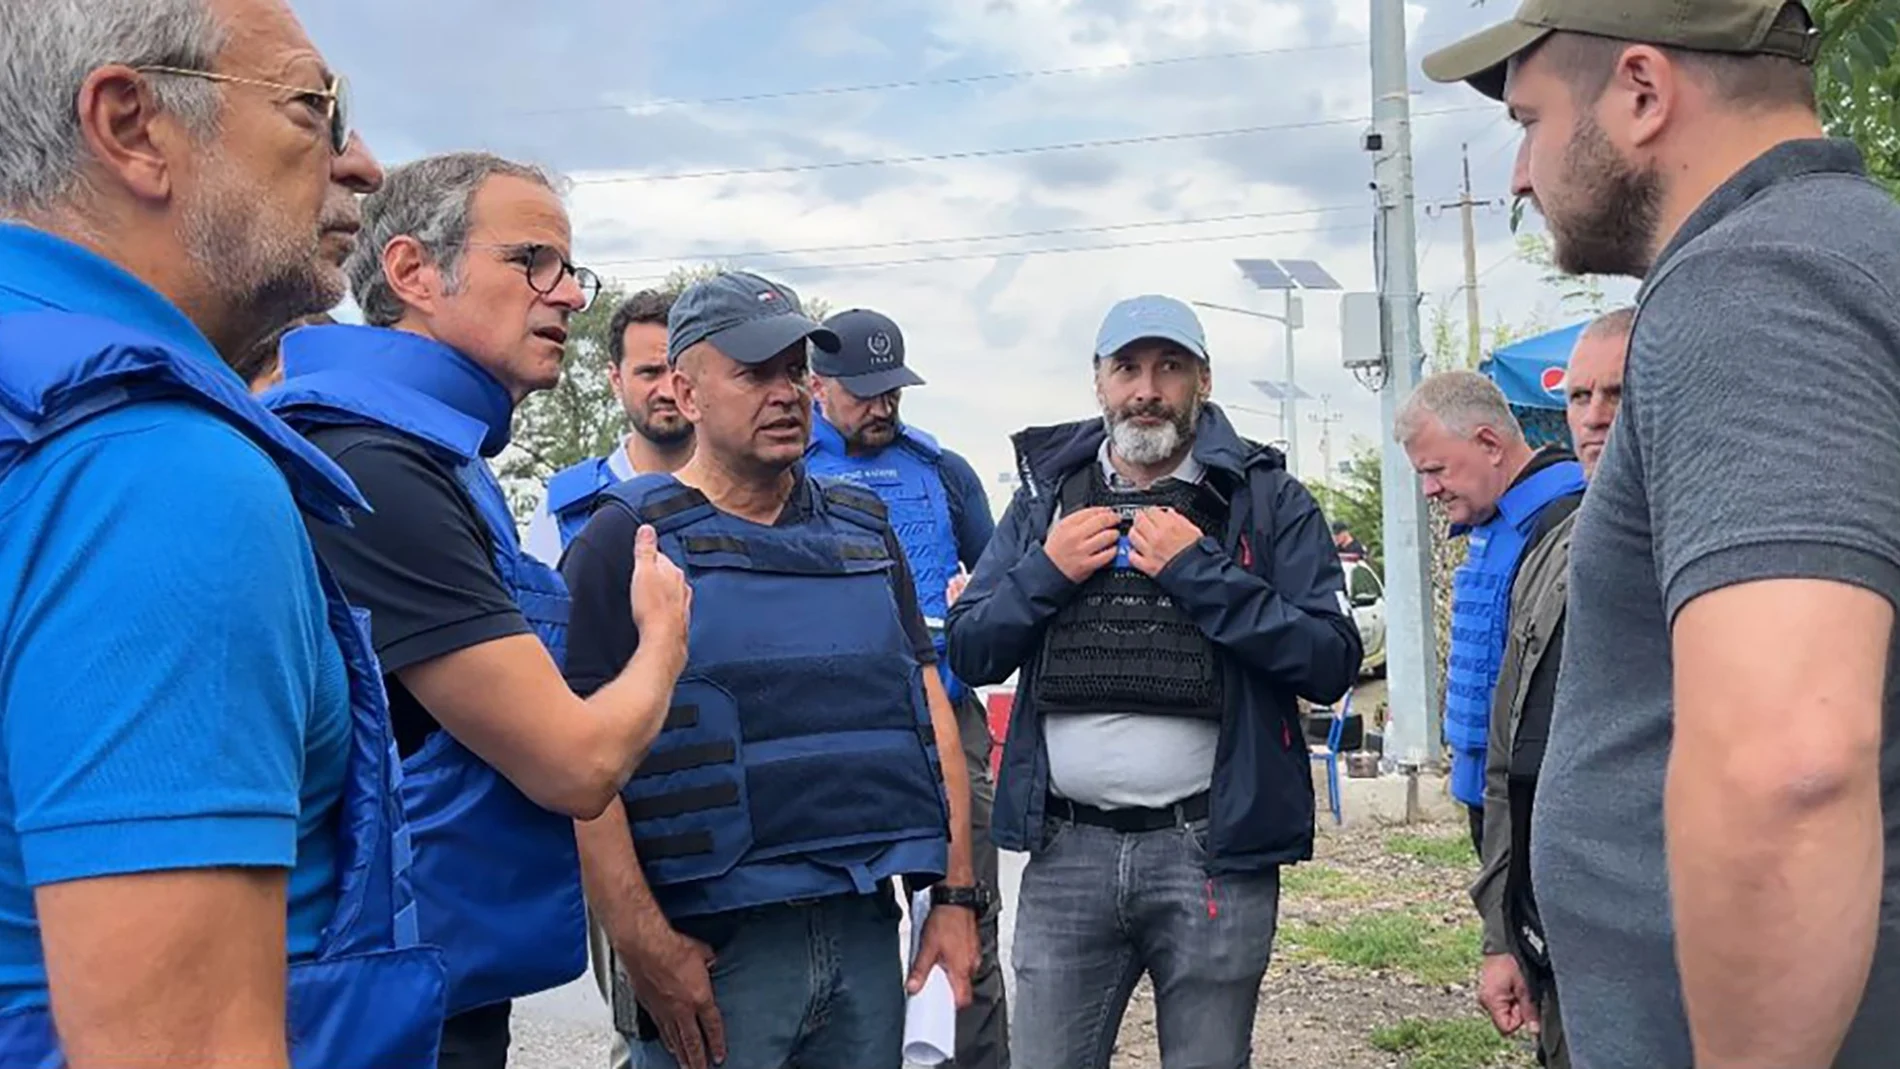 El director general del organismo de control nuclear, Rafael Mariano Grossi, segundo desde la izquierda, habla con las autoridades mientras los inspectores de la ONU acceden a la planta nuclear de Zaporiyia